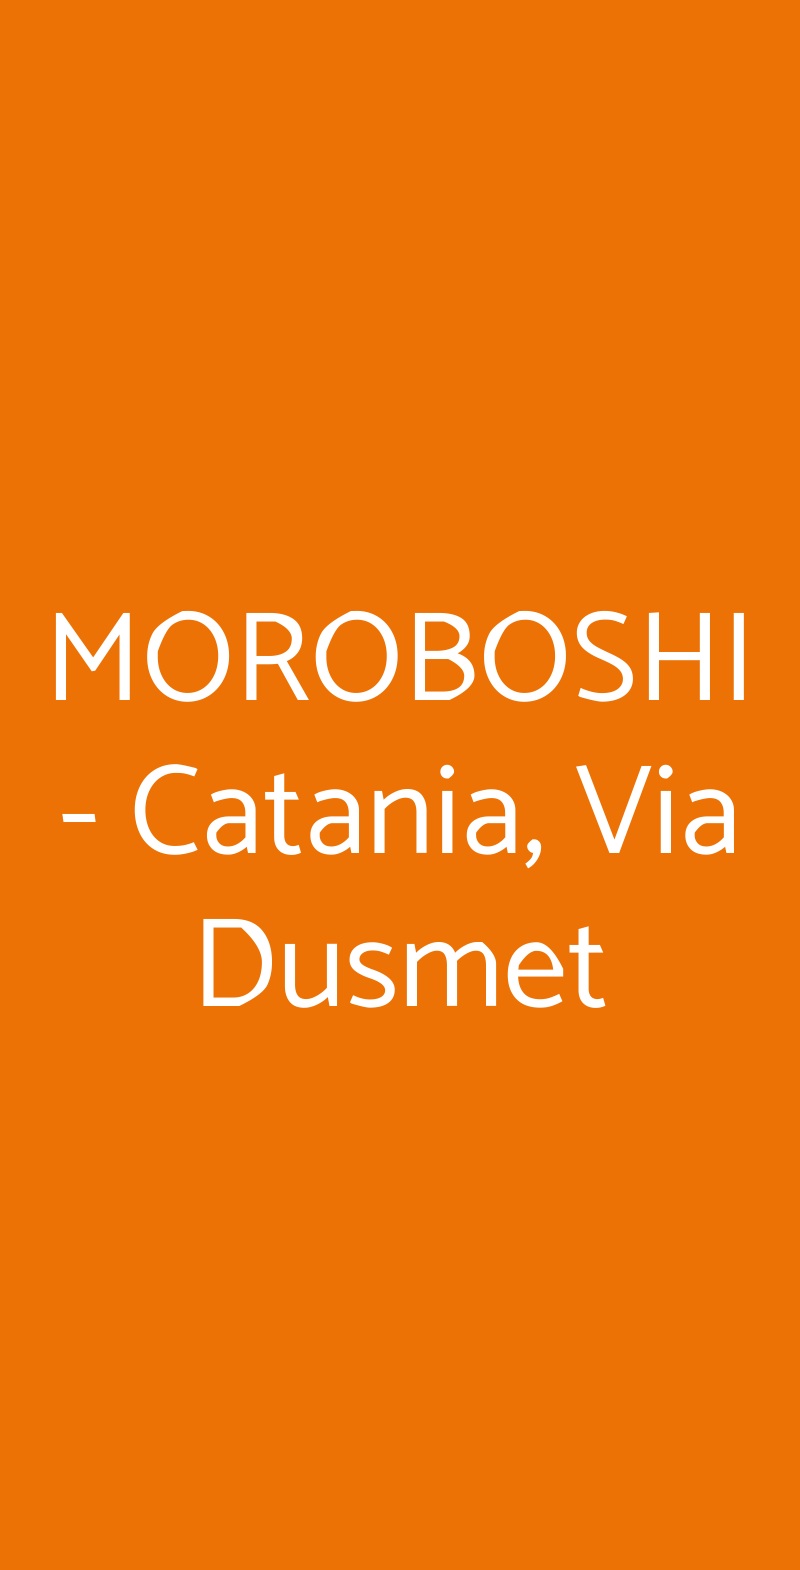 MOROBOSHI - Catania, Via Dusmet Catania menù 1 pagina